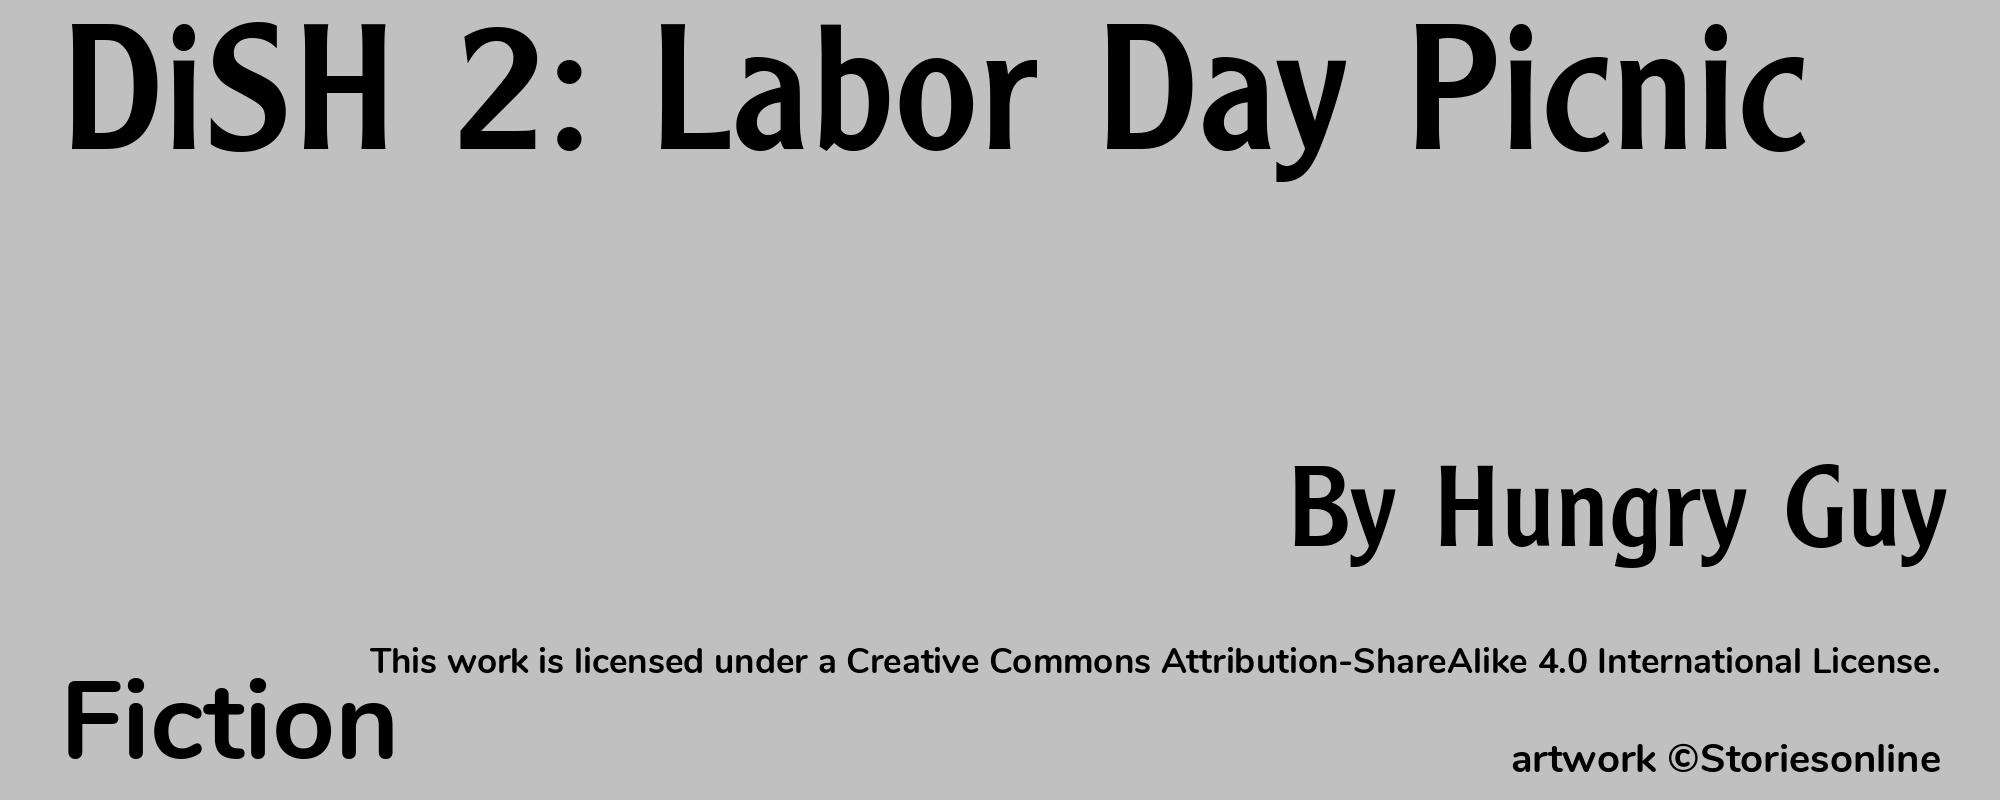 DiSH 2: Labor Day Picnic - Cover